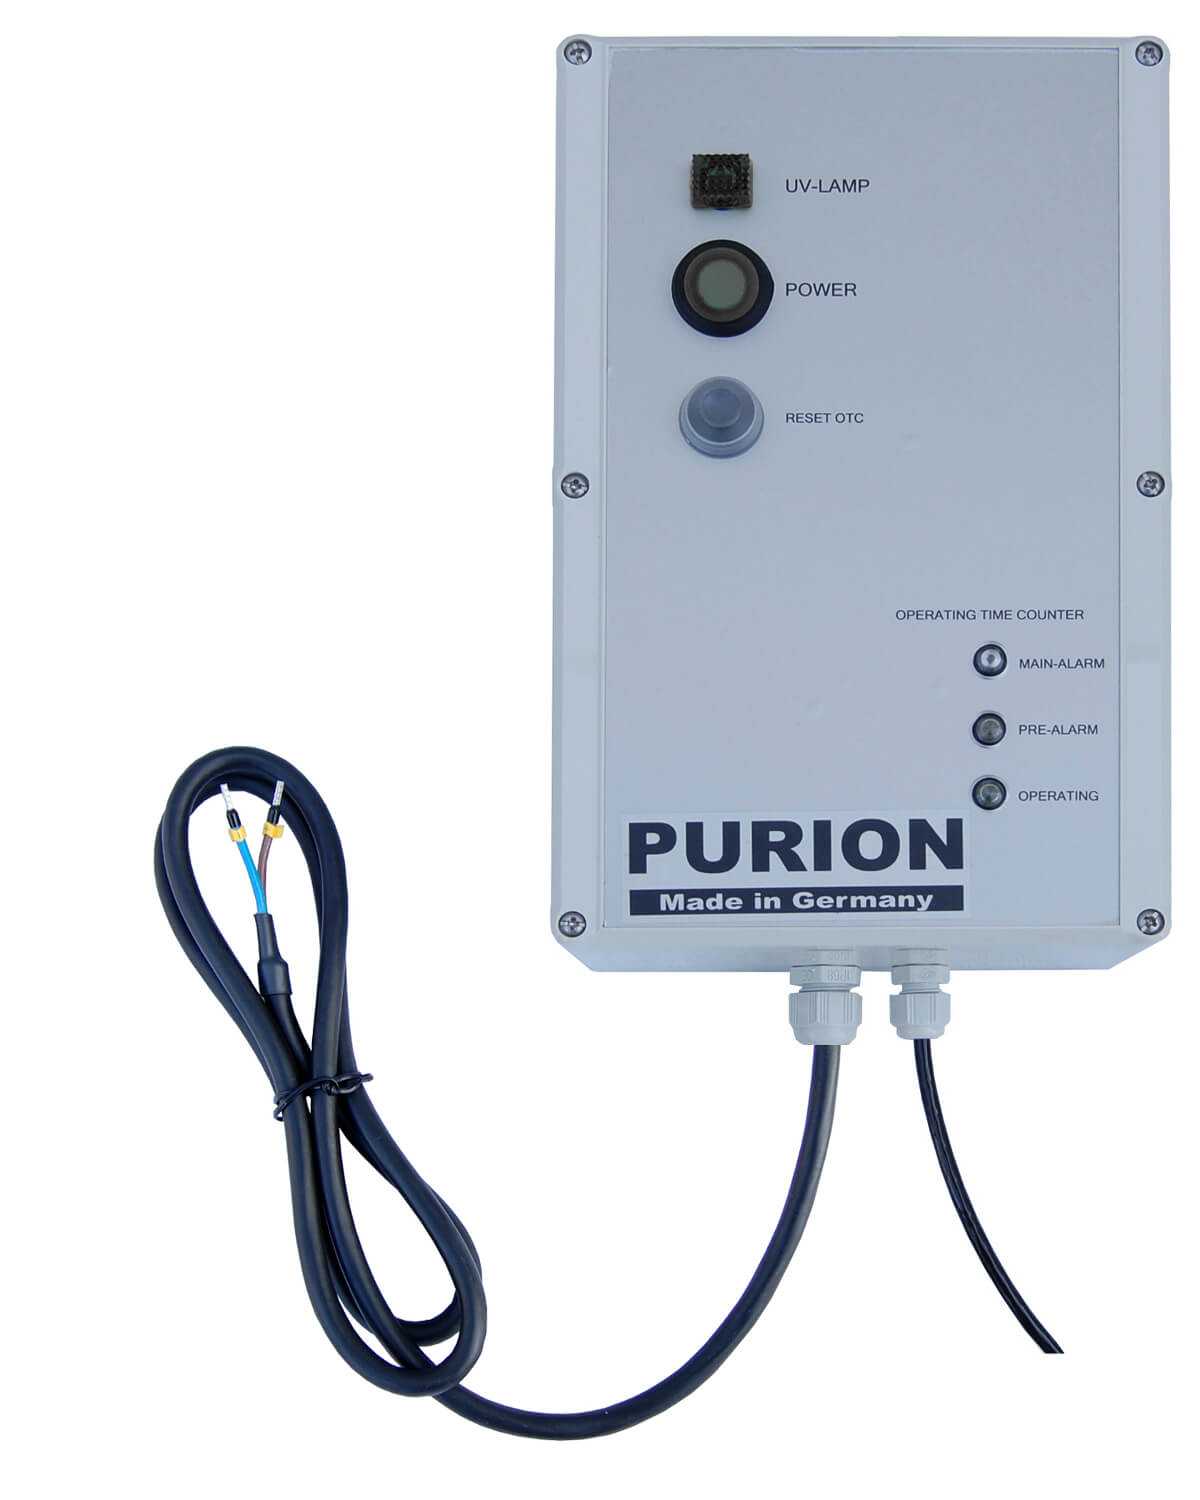 Das PURION 400 OTC Bundle ist eine UV-C-Lampe von der Marke PURION GmbH, die entkeimtes Trinkwasser liefert. Es kann ohne dass eine externe Stromquelle erforderlich ist.